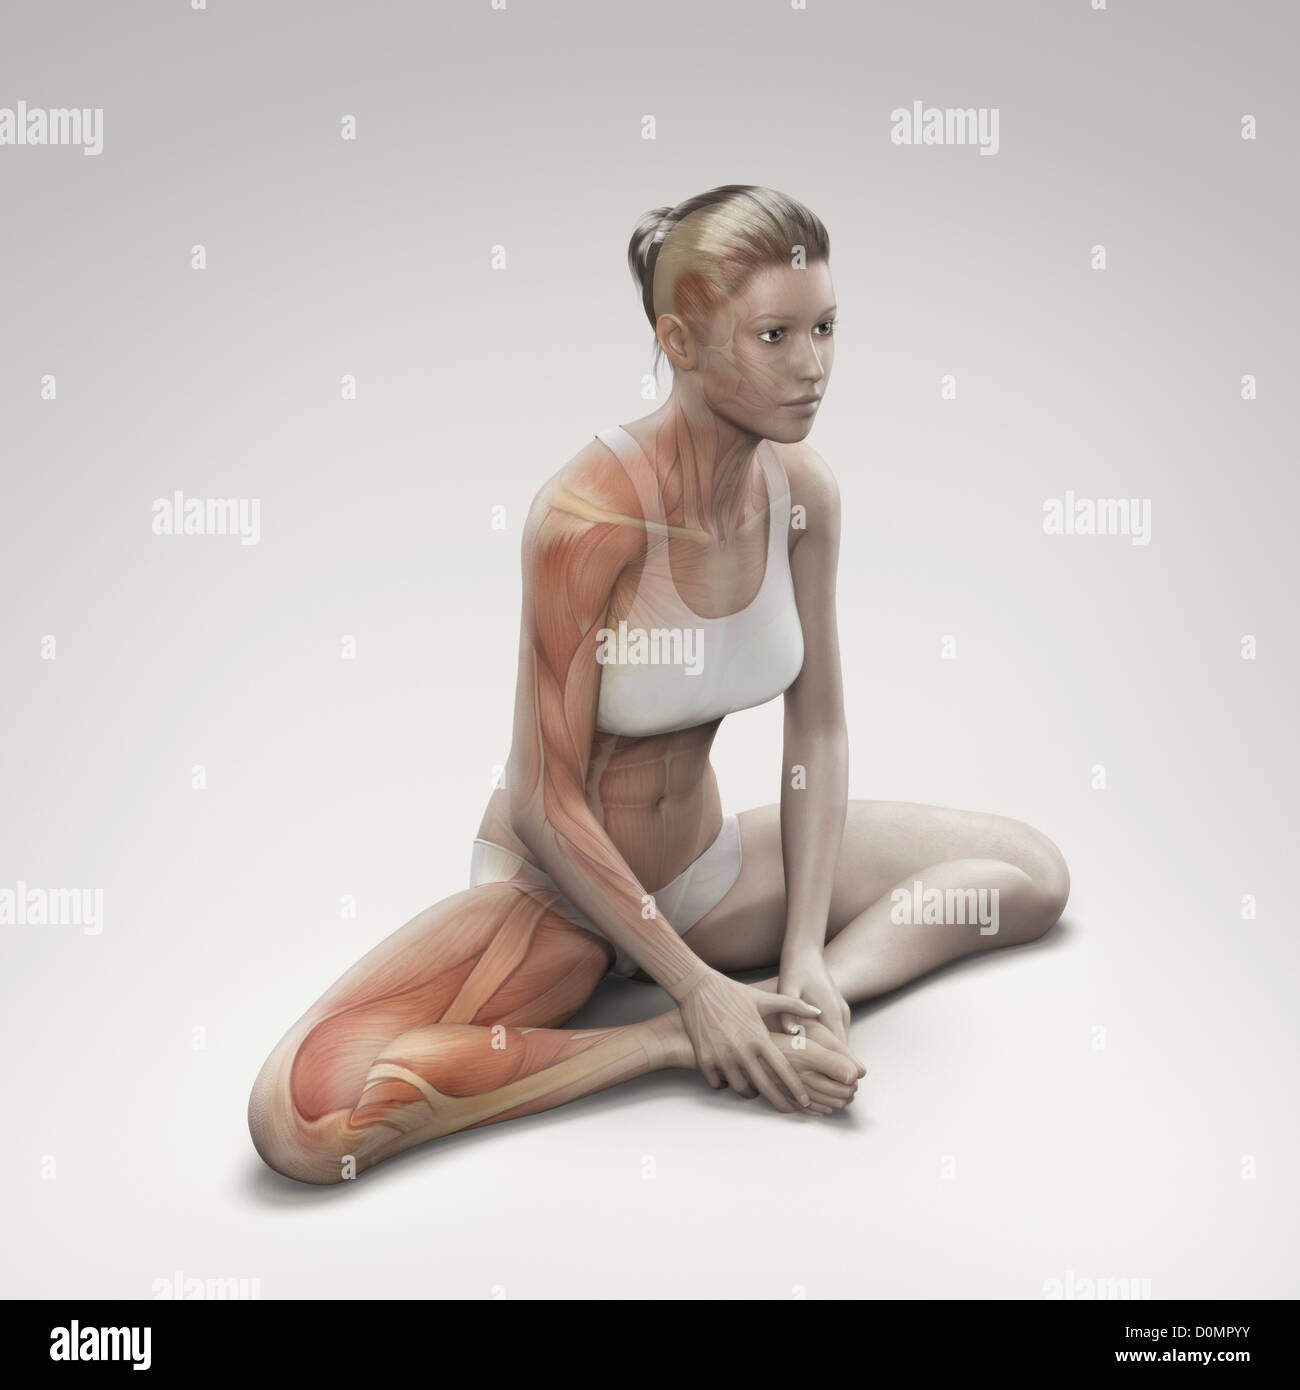 Muskulatur über einen weiblichen Körper in der gebundenen Winkel Pose zeigt die Aktivität in dieser bestimmten Yogastellung geschichtet. Stockfoto